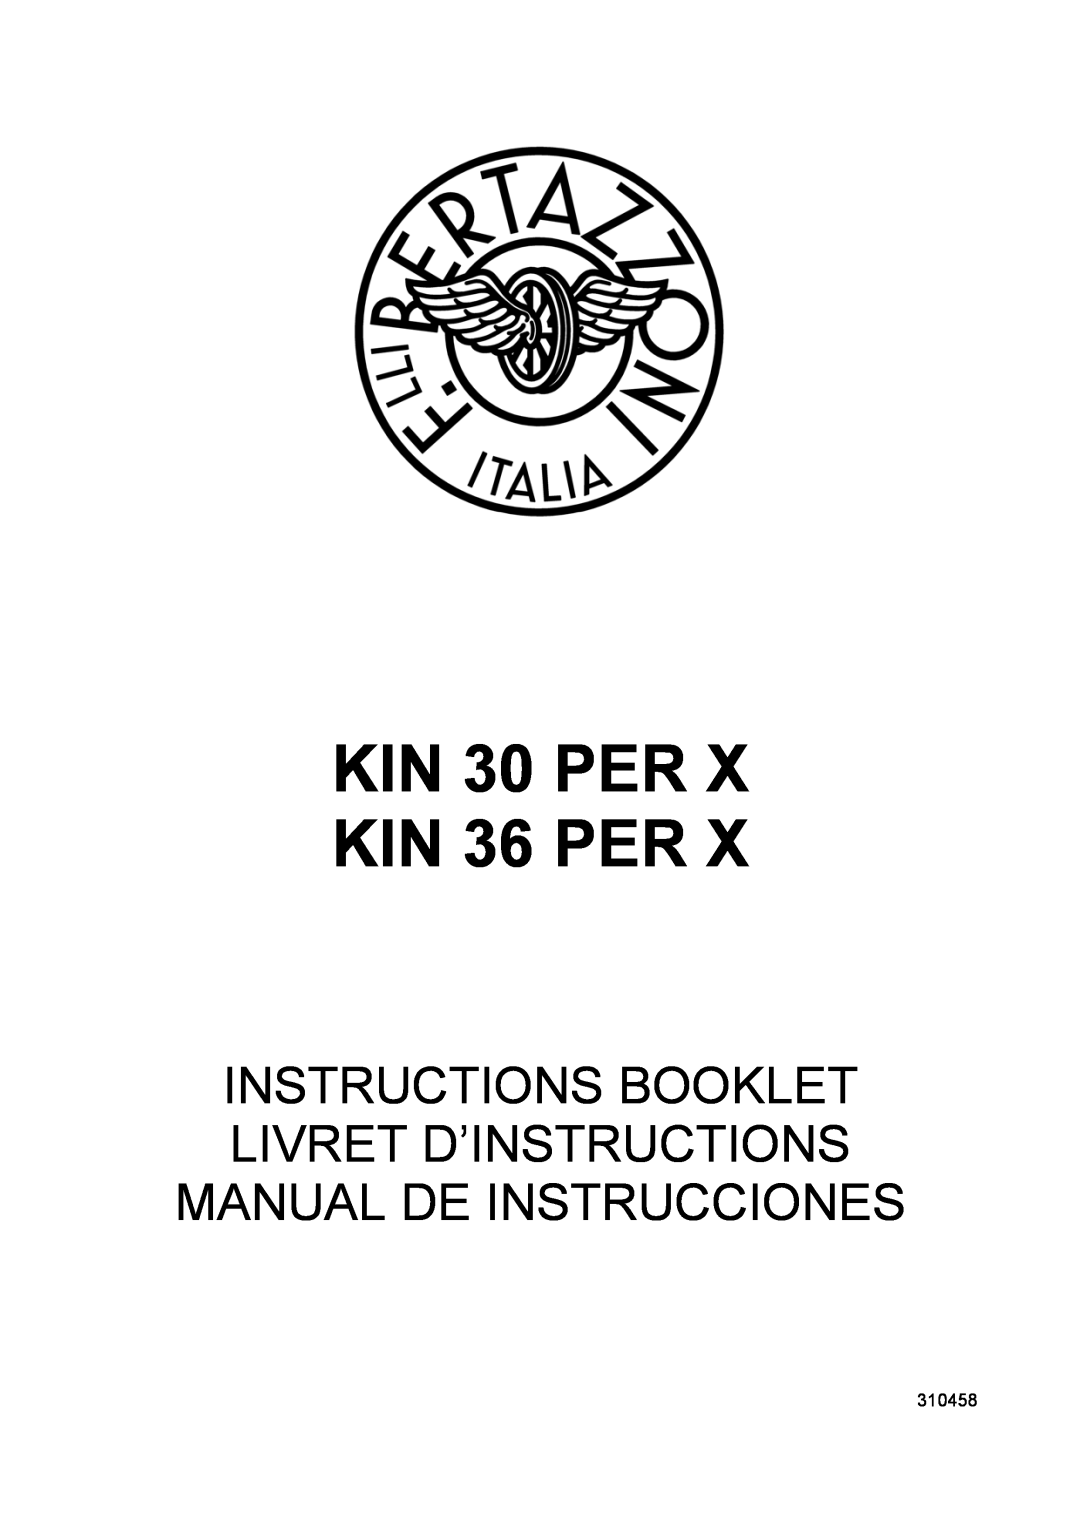 Bertazzoni KIN 36 PER X, KIN 30 PER X manual KIN 30 PER KIN 36 PER, 310458 